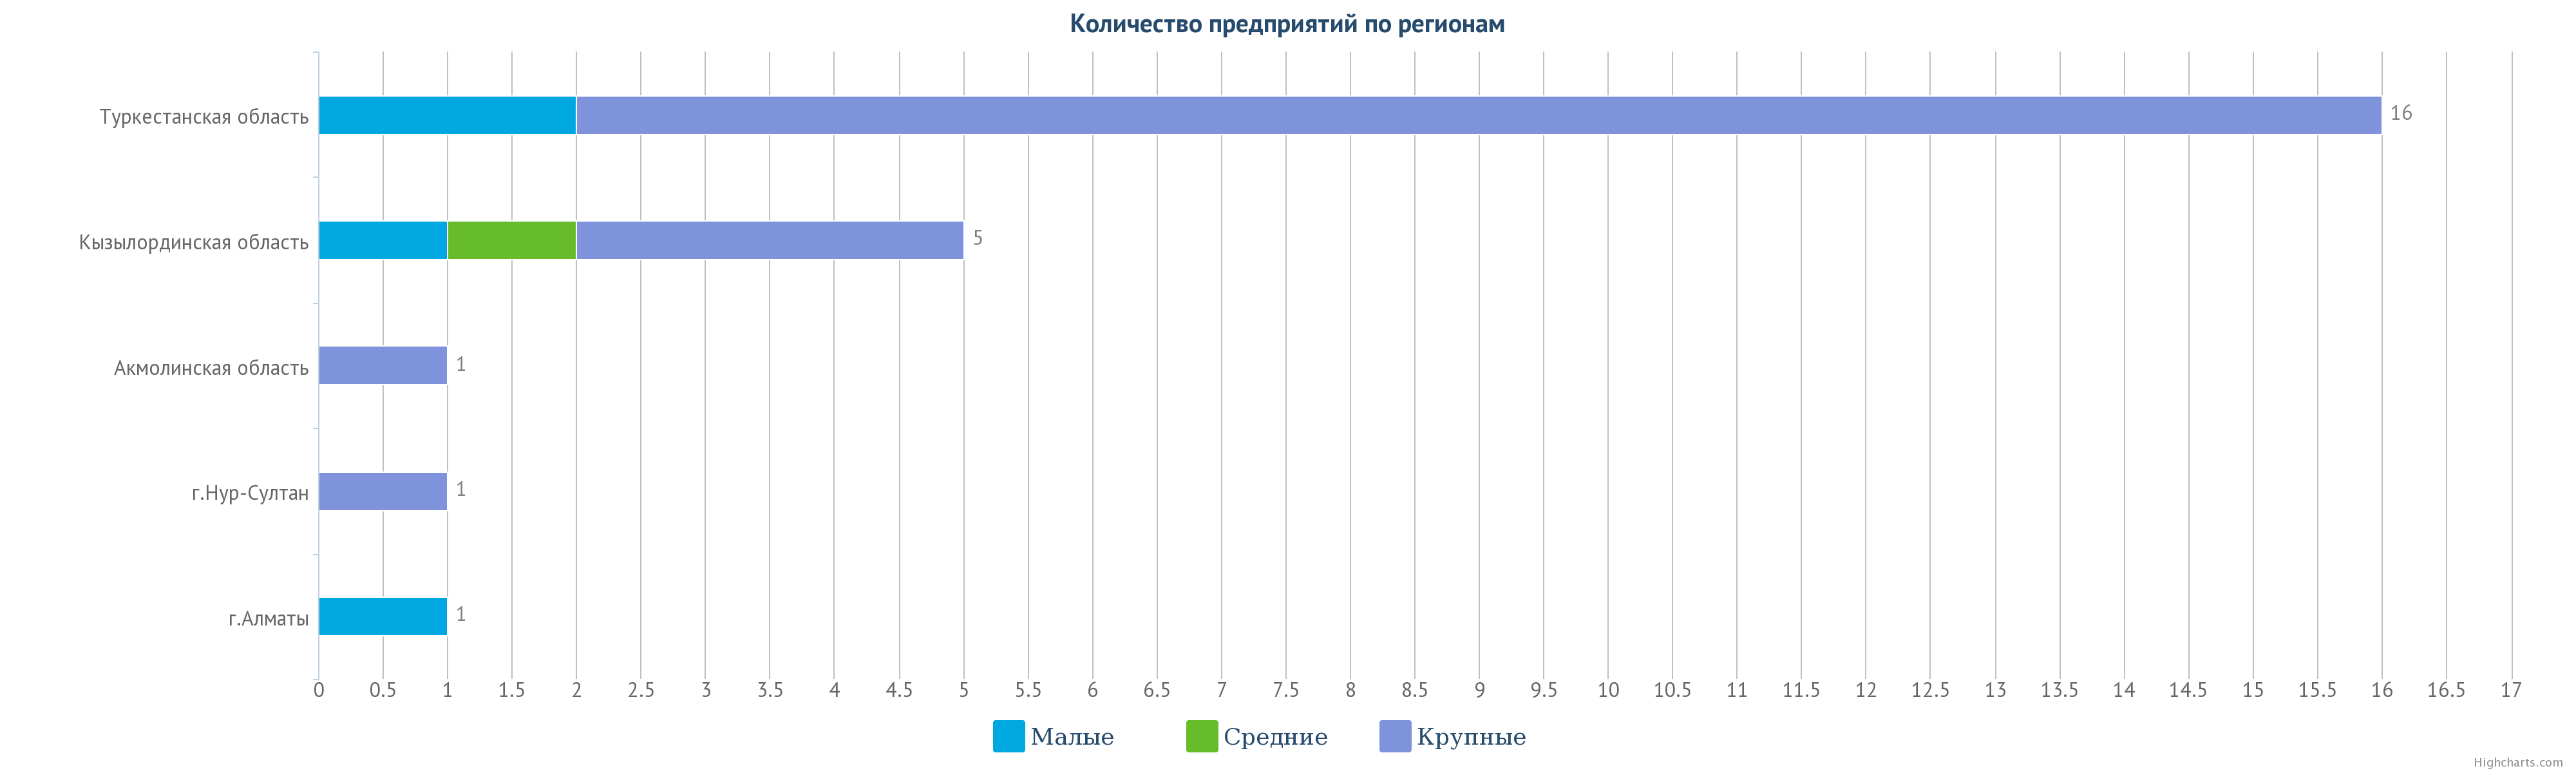 Расположения по регионам Казахстана предприятий добывающих урановую руду.